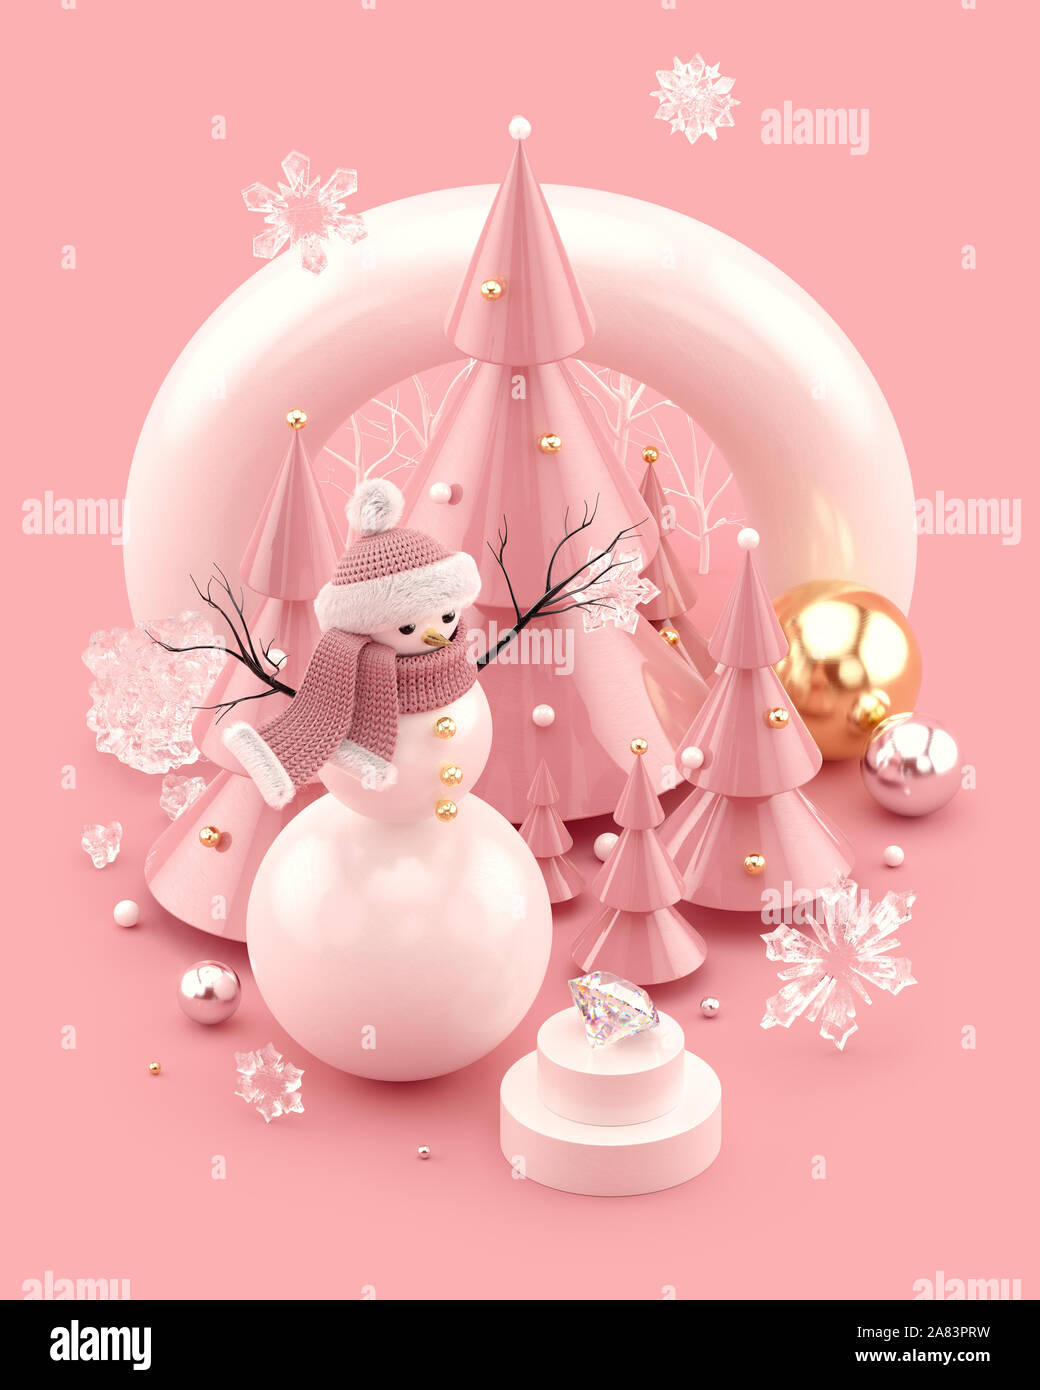 Weihnachten Abbildung mit niedlichen Schneemann, Weihnachtsbäume, und Schneeflocken. Xmas Vorlage für Poster, Abdeckungen und Banner. 3D-Rendering. Stockfoto